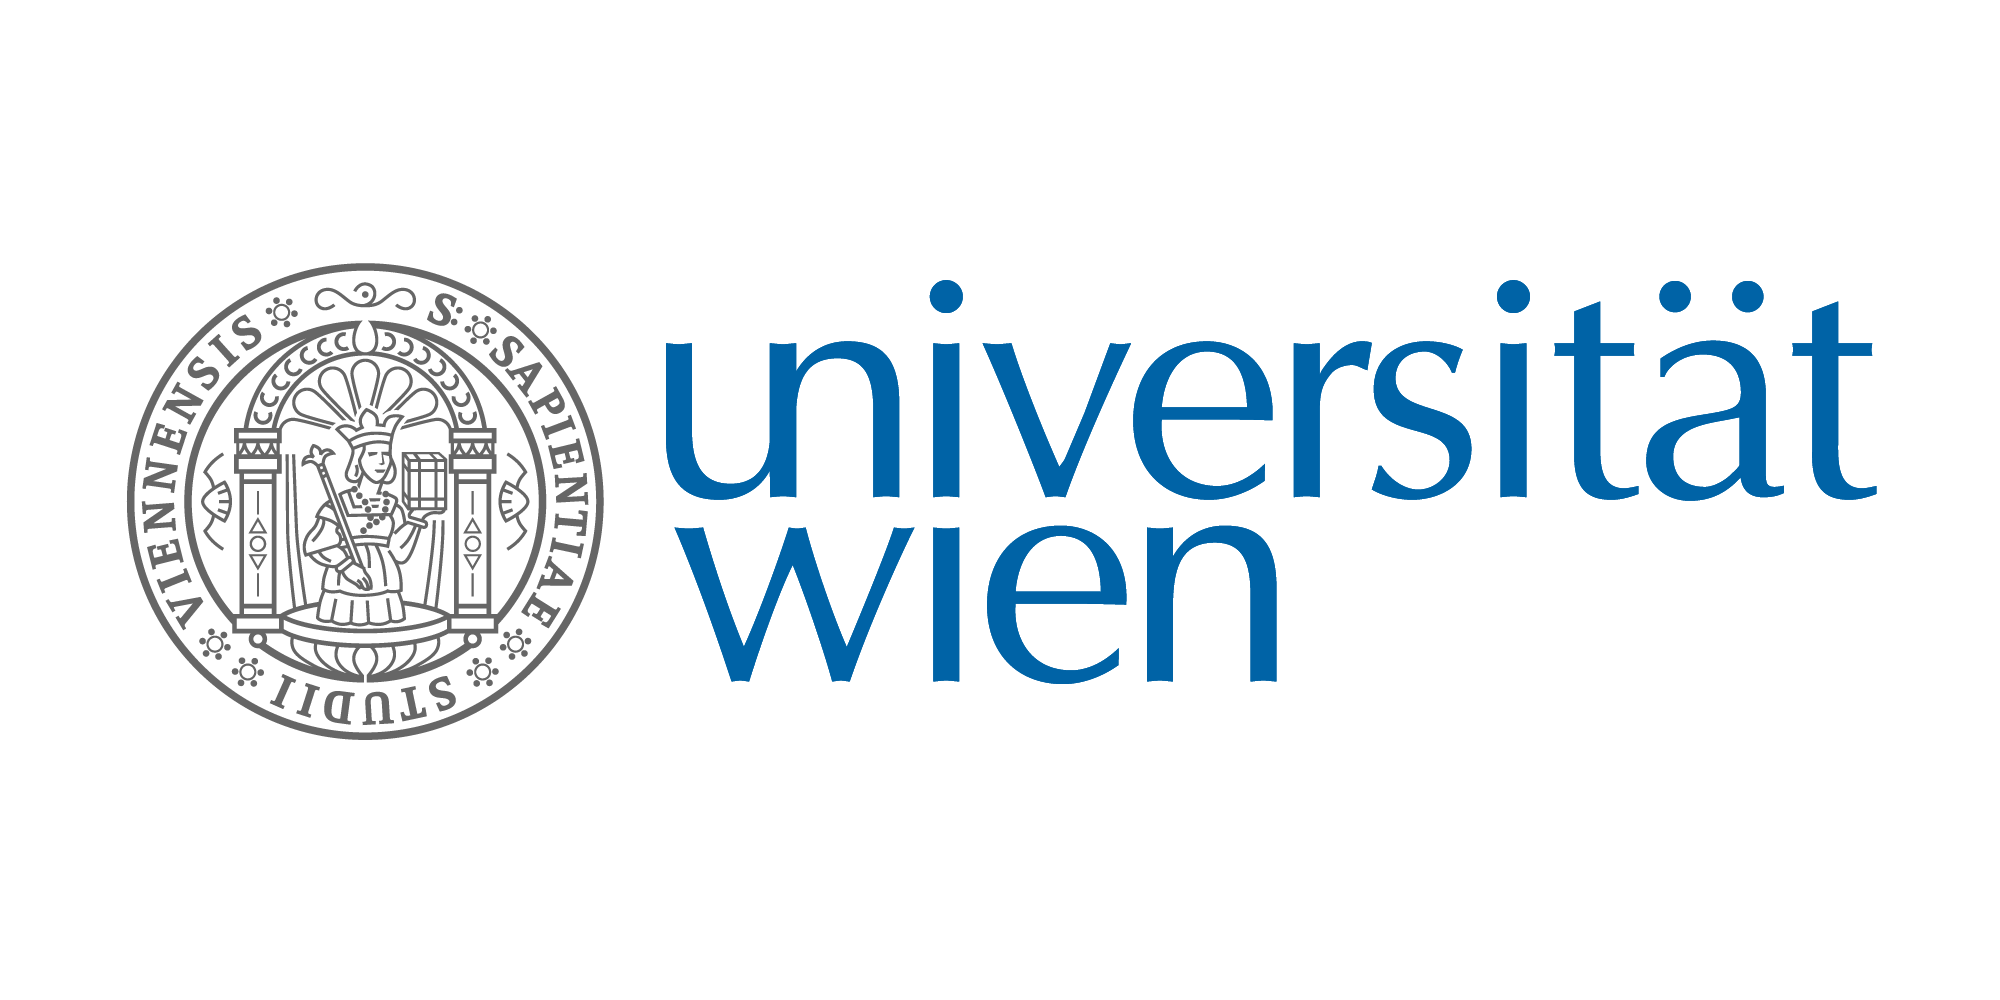 Logo Uni Wien